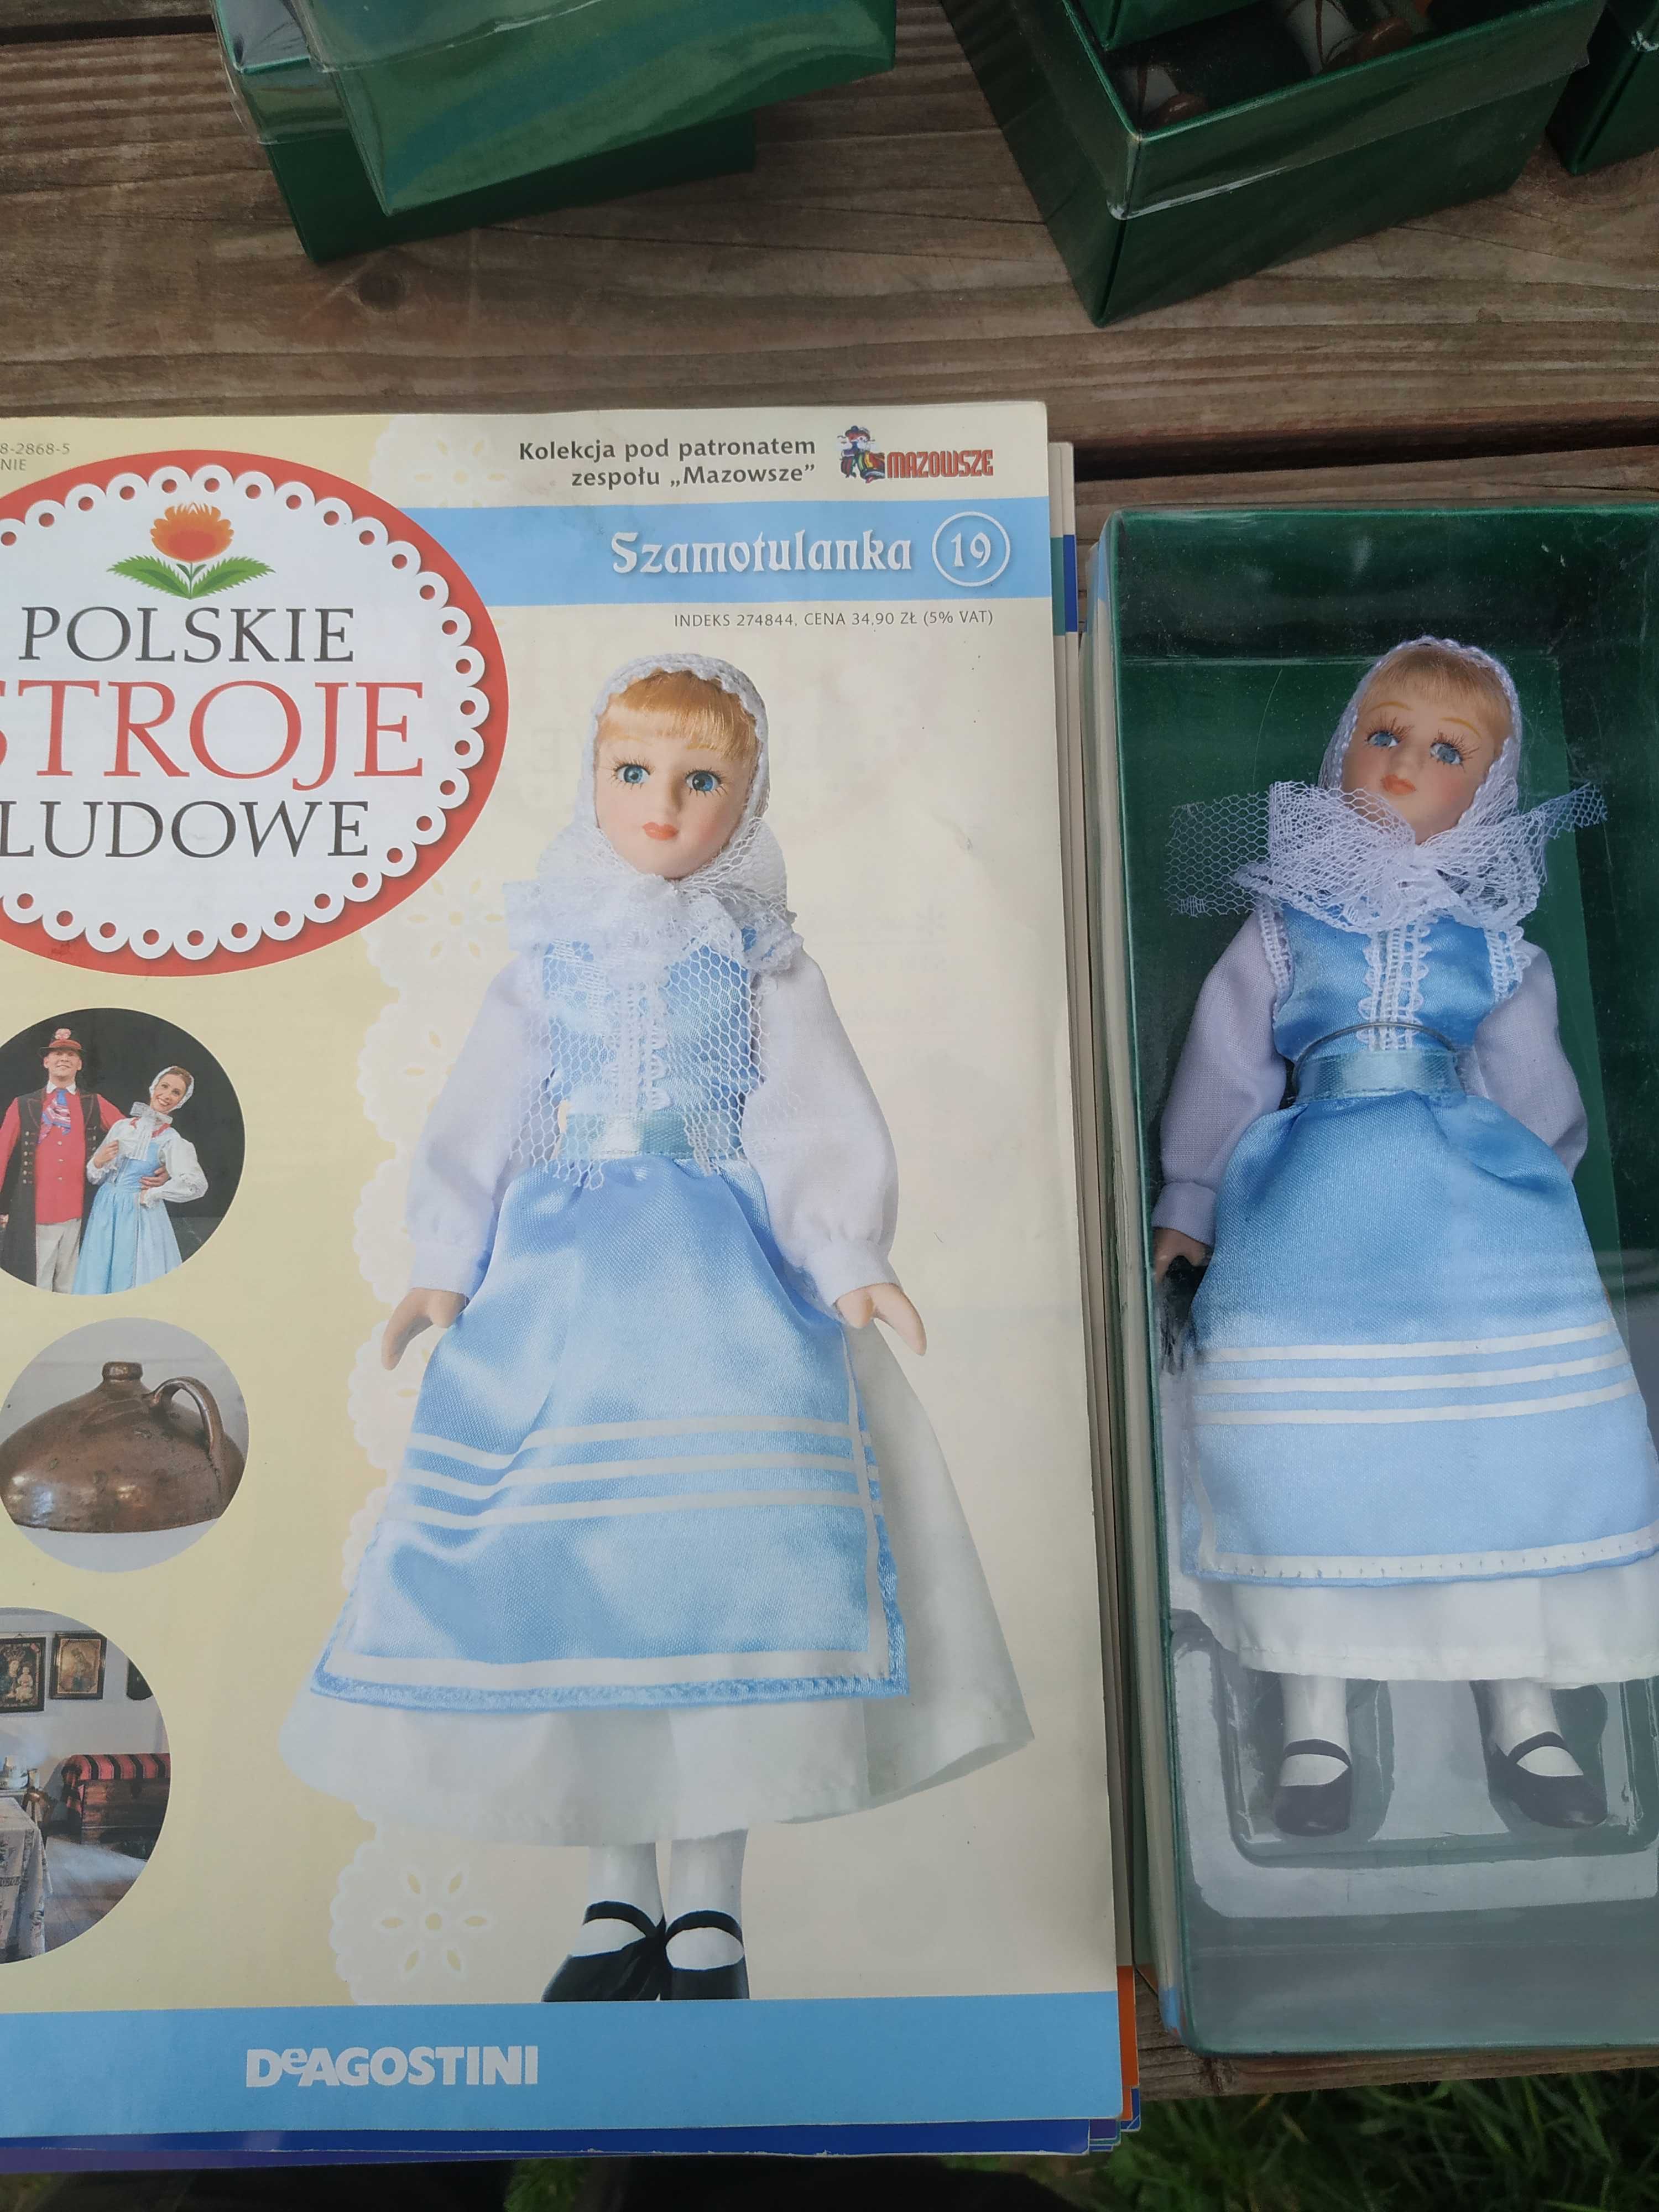 Porcelanowa lalka w polskim stroju ludowym